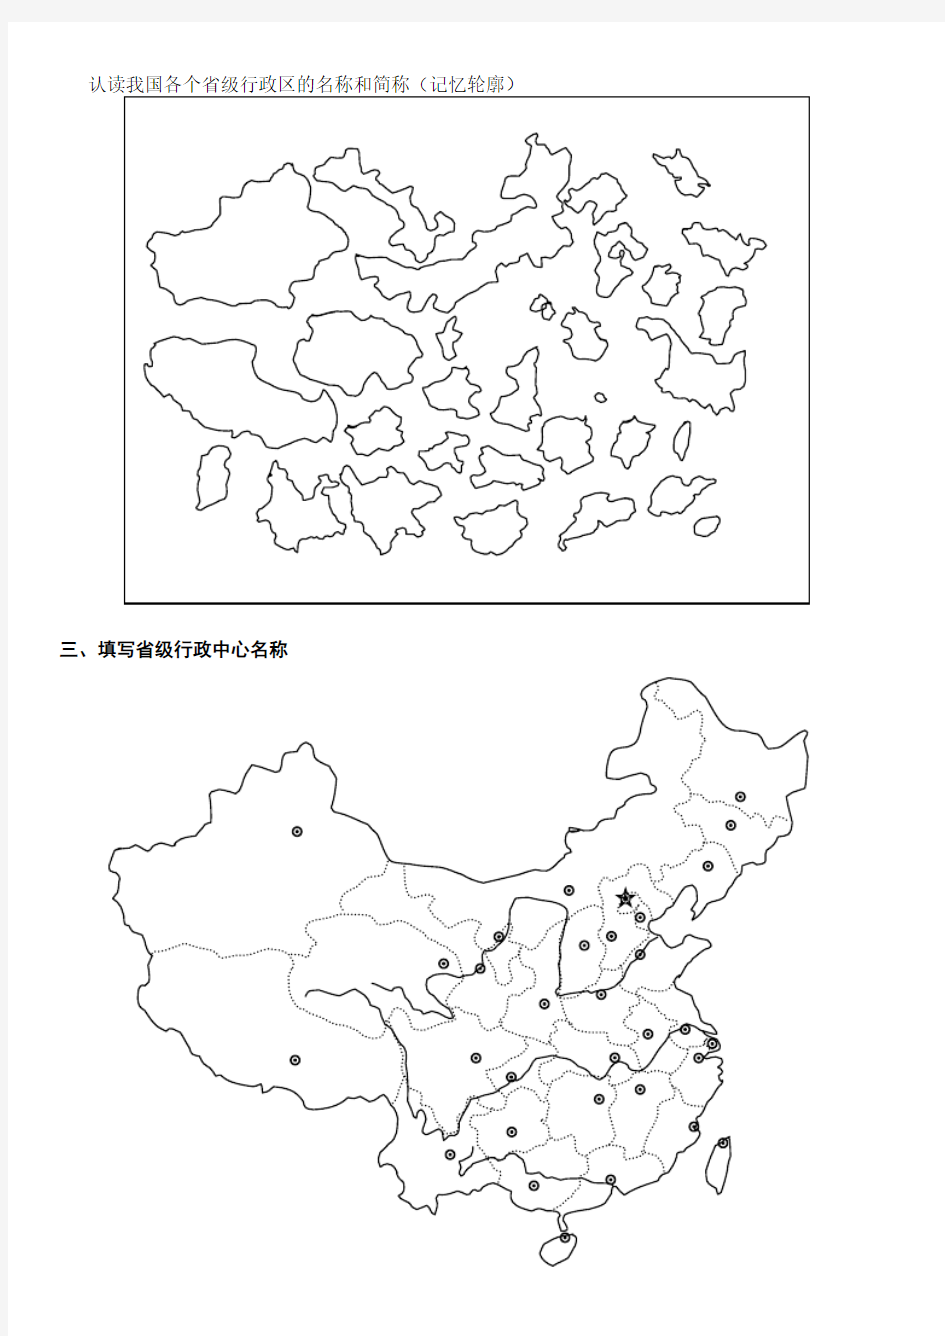 初中中国地理填图集